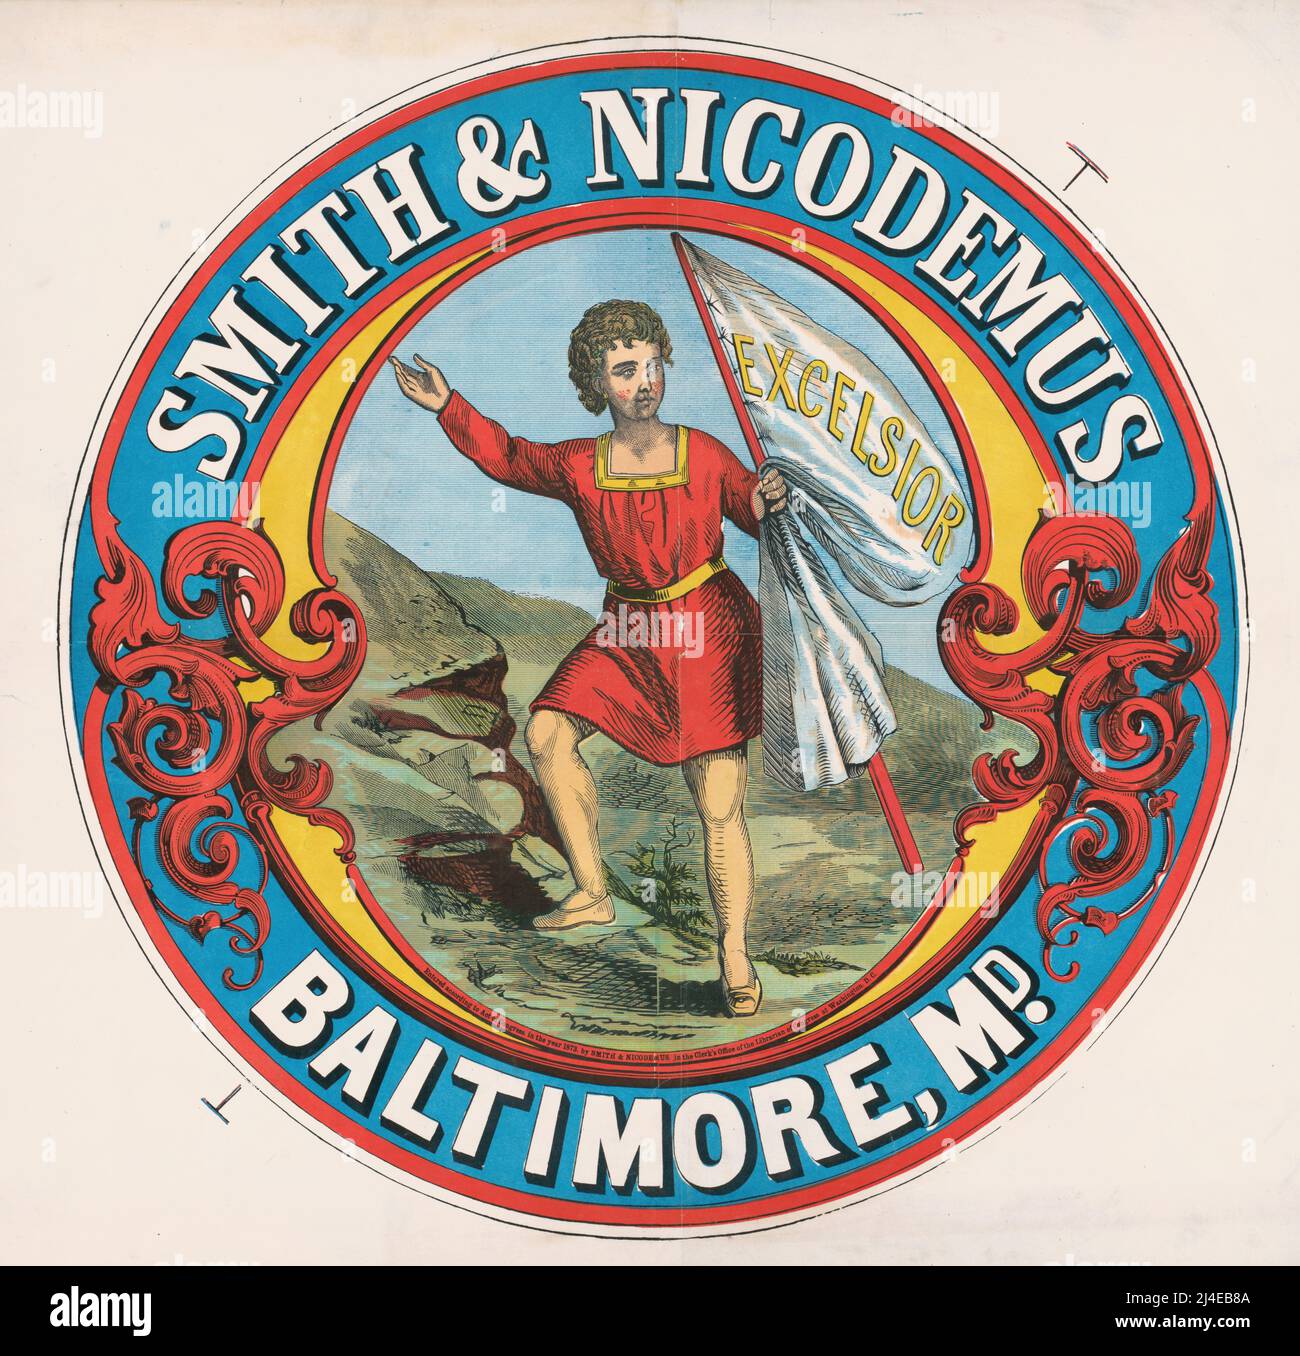 1873 annuncio per le disposizioni di Smith e Nicodemus, Baltimora, Maryland Foto Stock